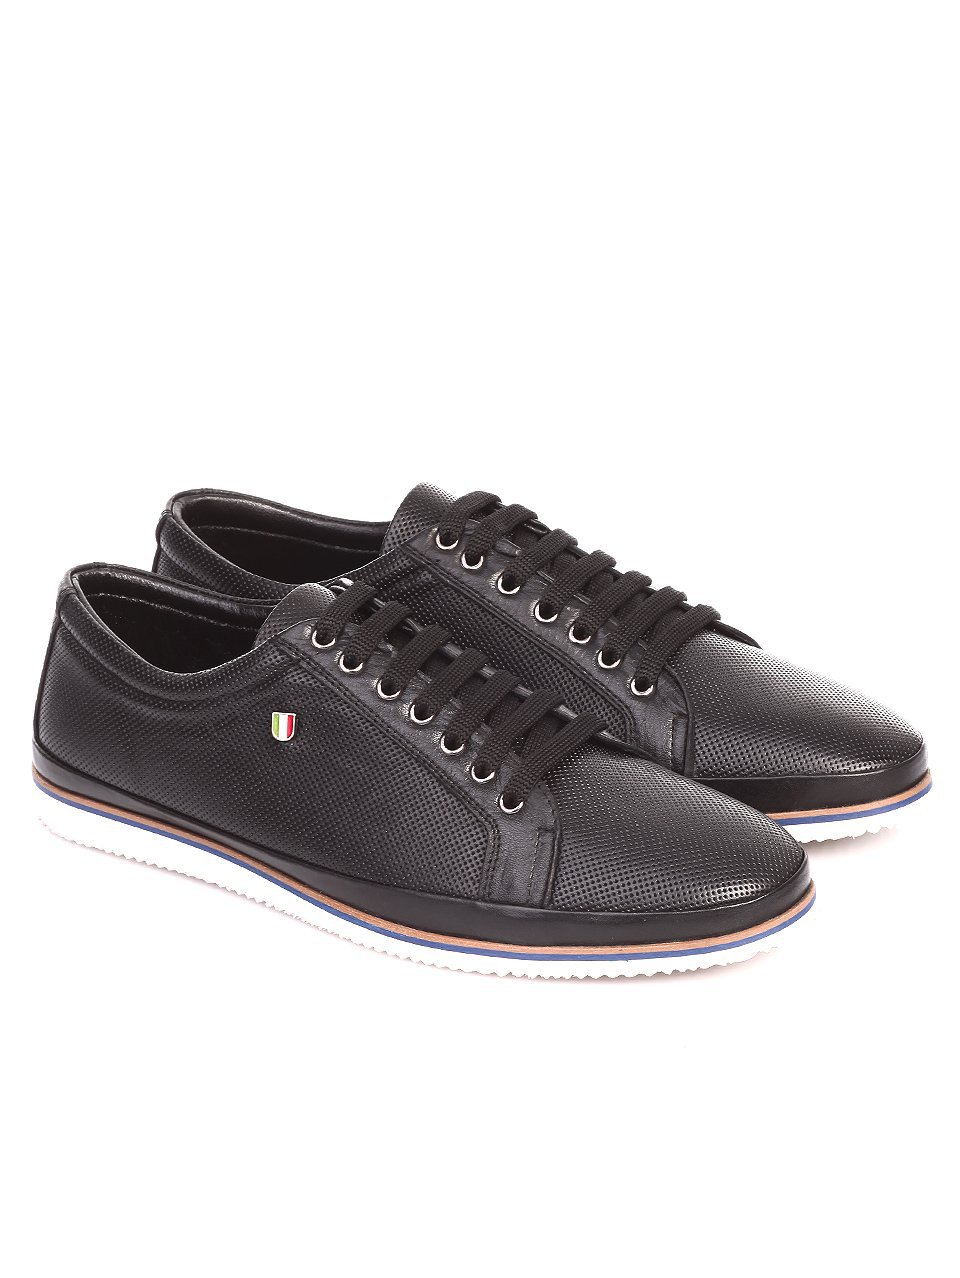 Ежедневни мъжки обувки от естествена кожа в черно 7AT-17608 black